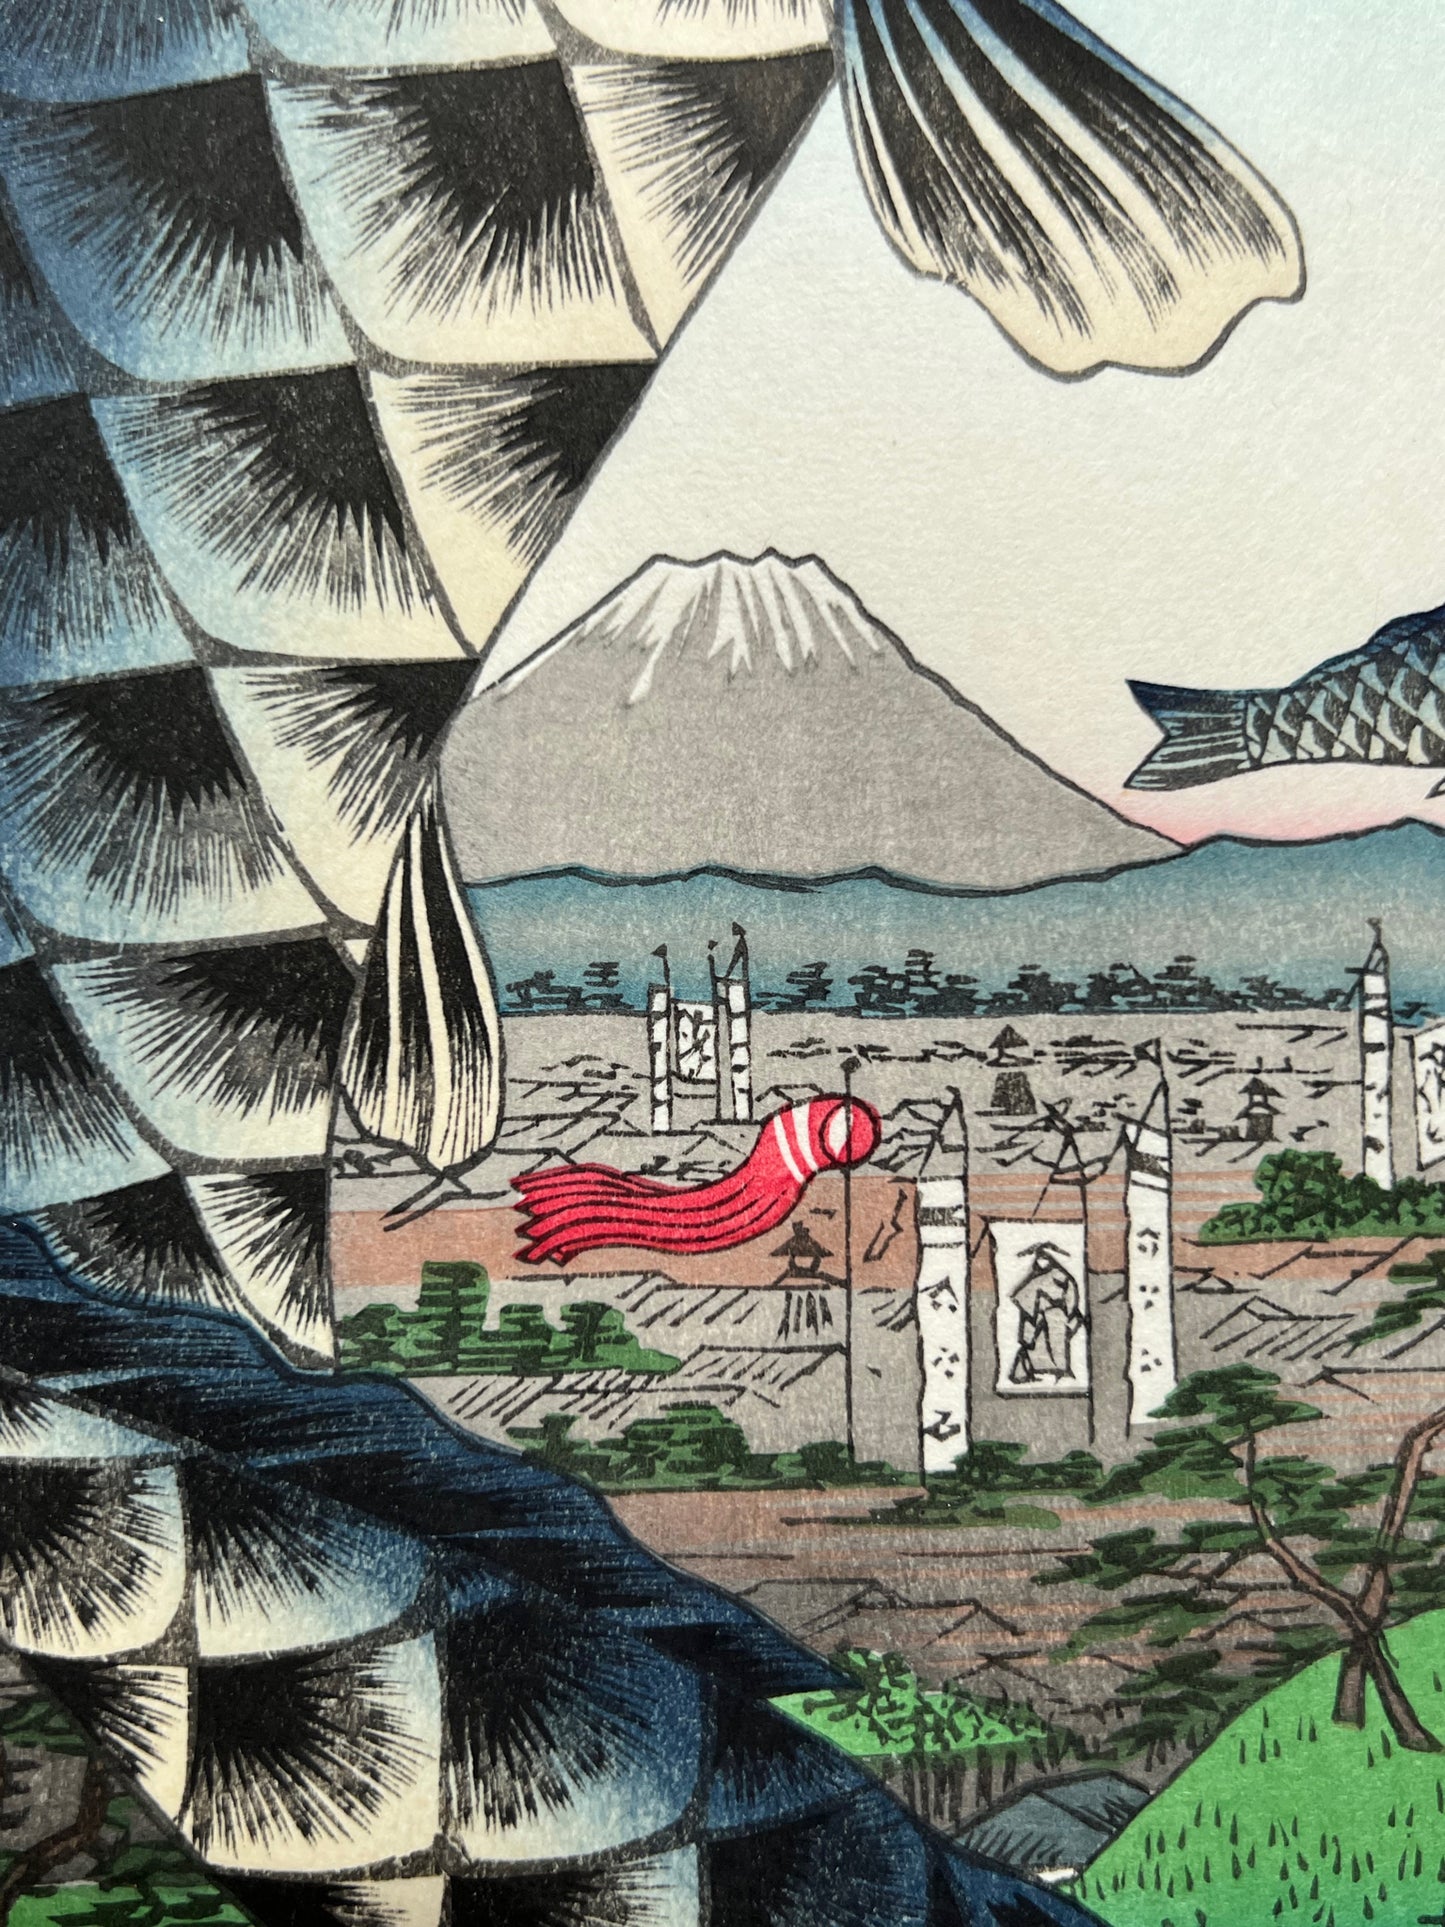  estampe japonaise carpe koi en banniere, le mont Fuji et le quartier des samouraïs